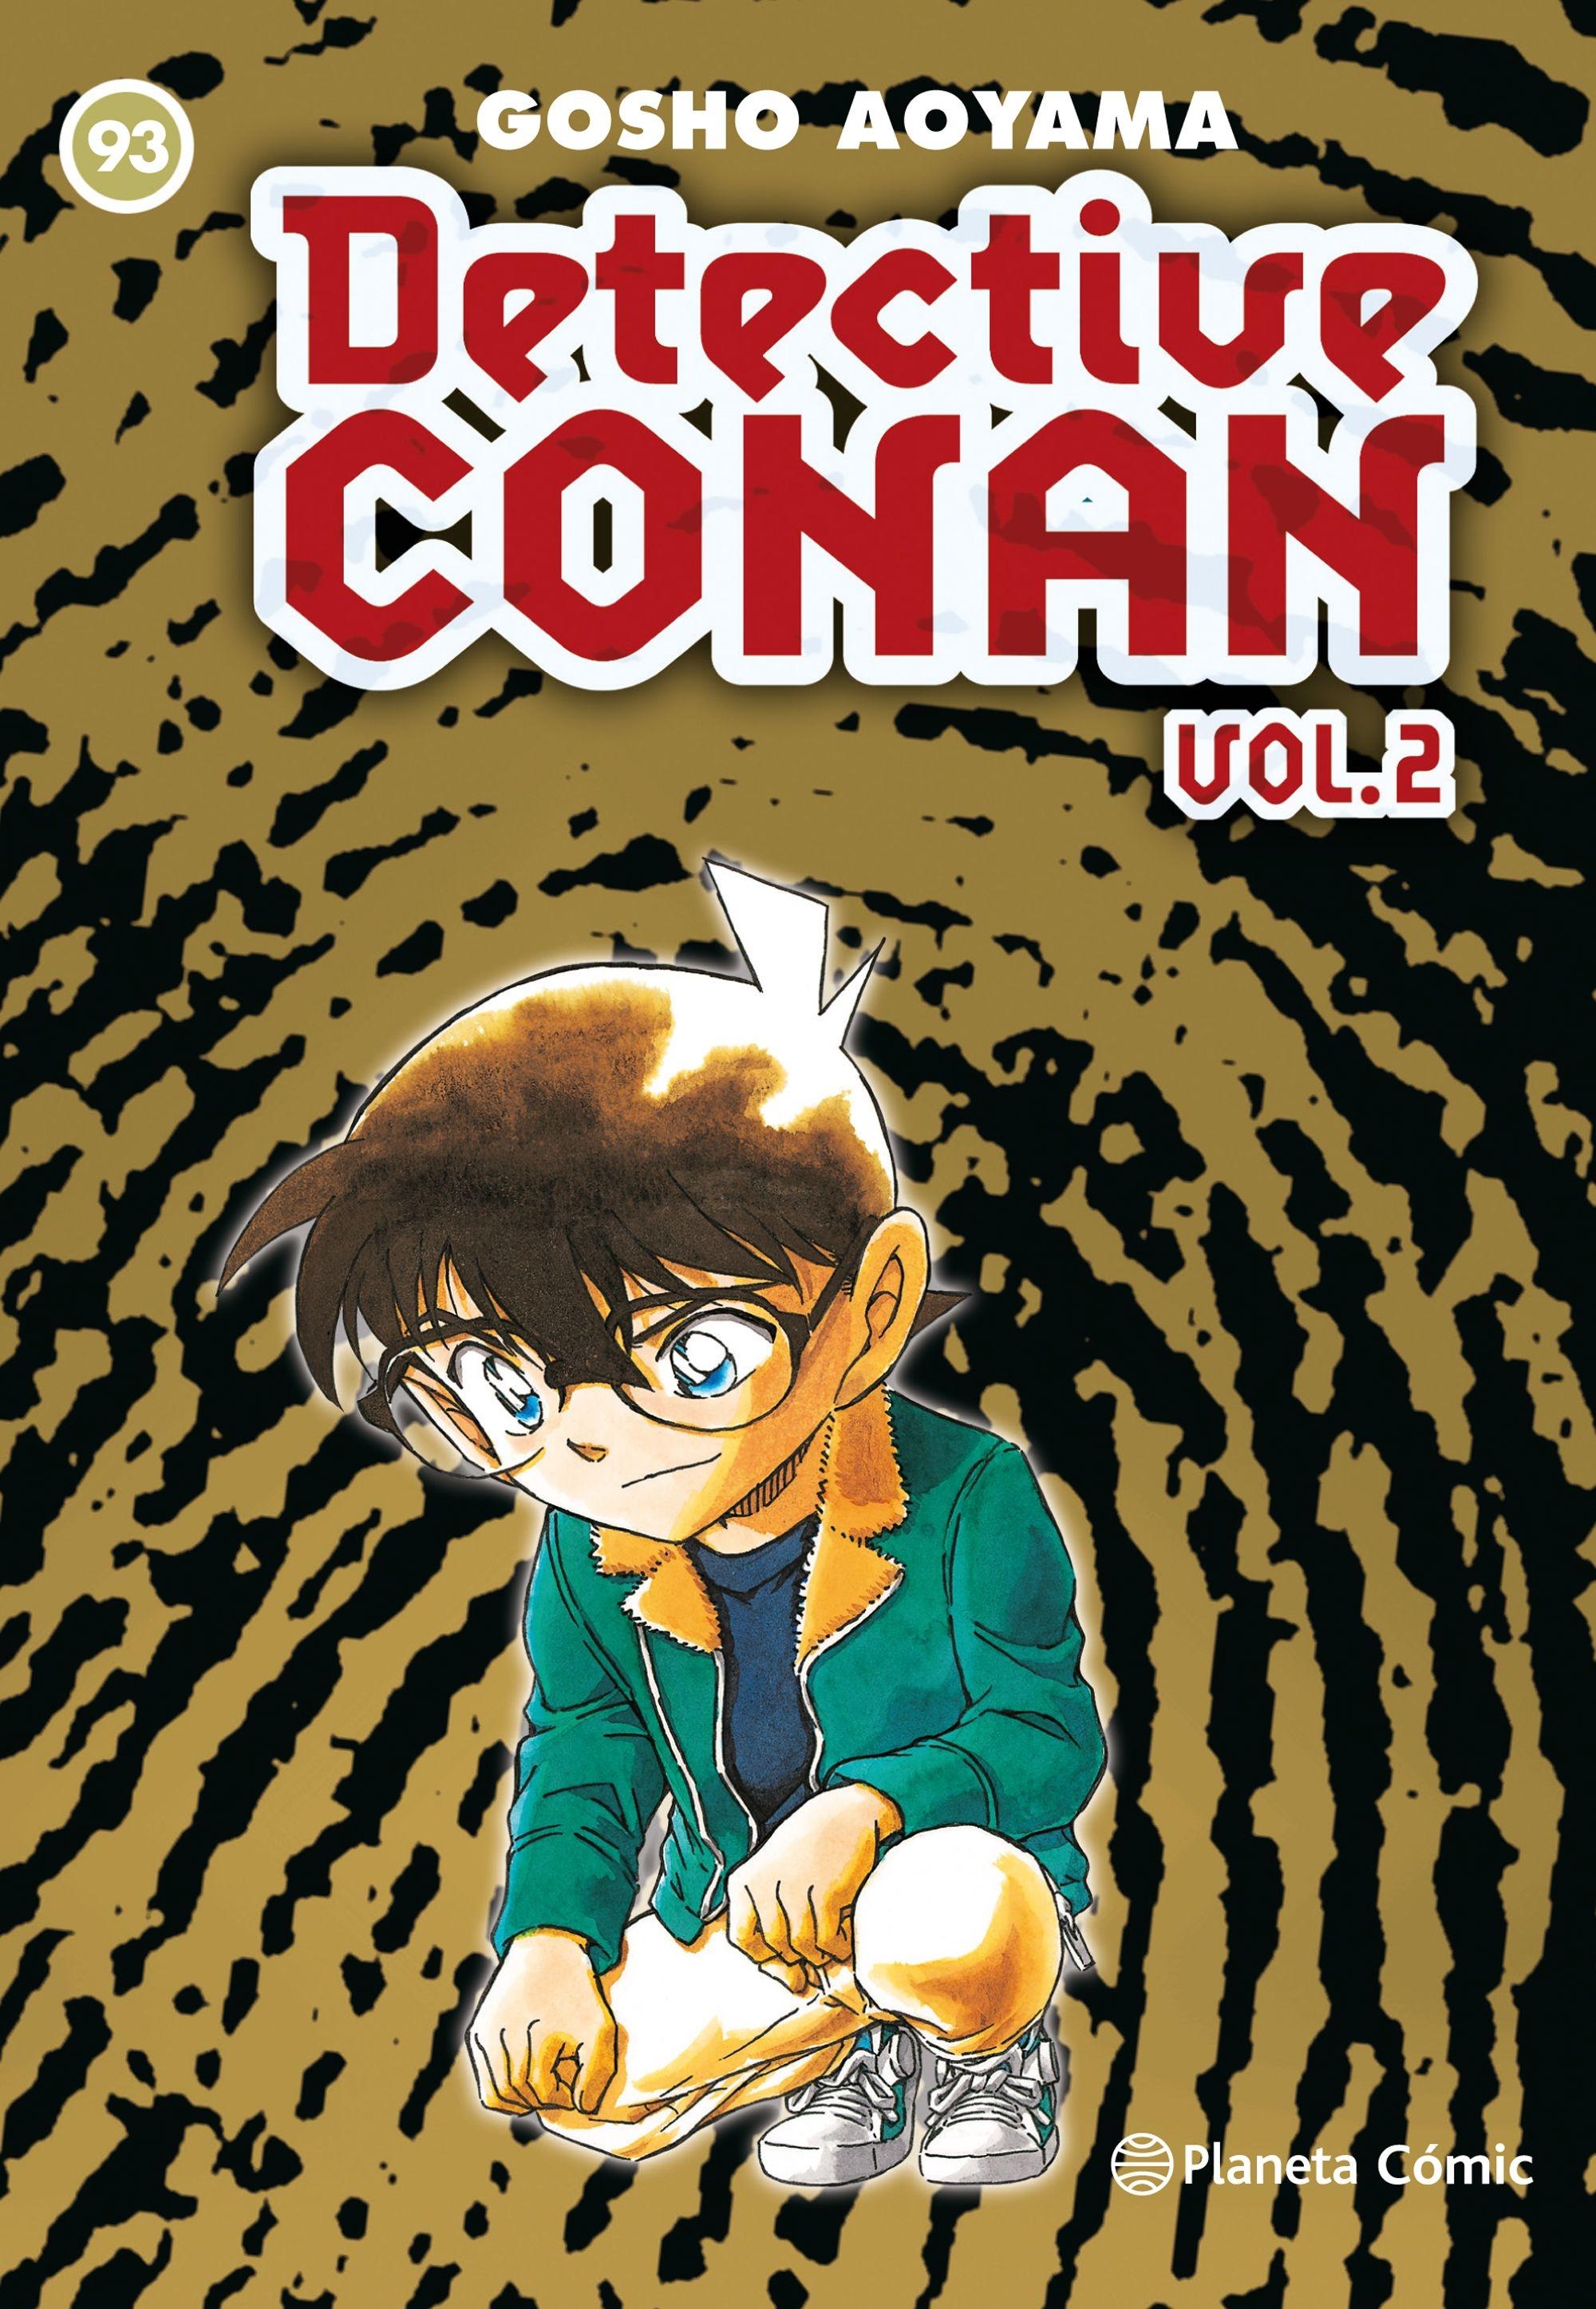 Detective Conan Vol.2 | Nº 93. 